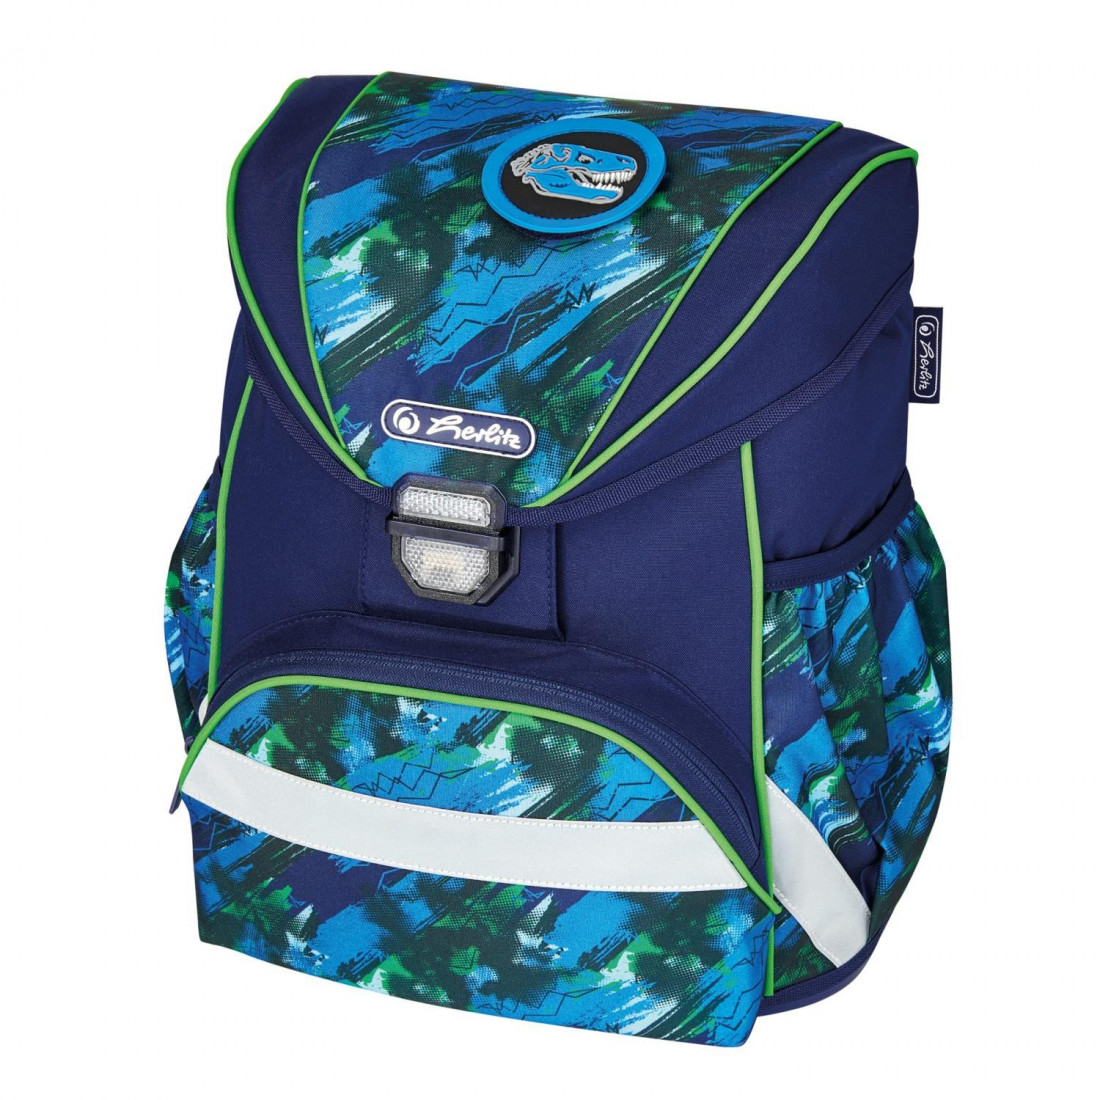 Σχολική τσάντα Ultralight κενή Splash50026906 Herlitz